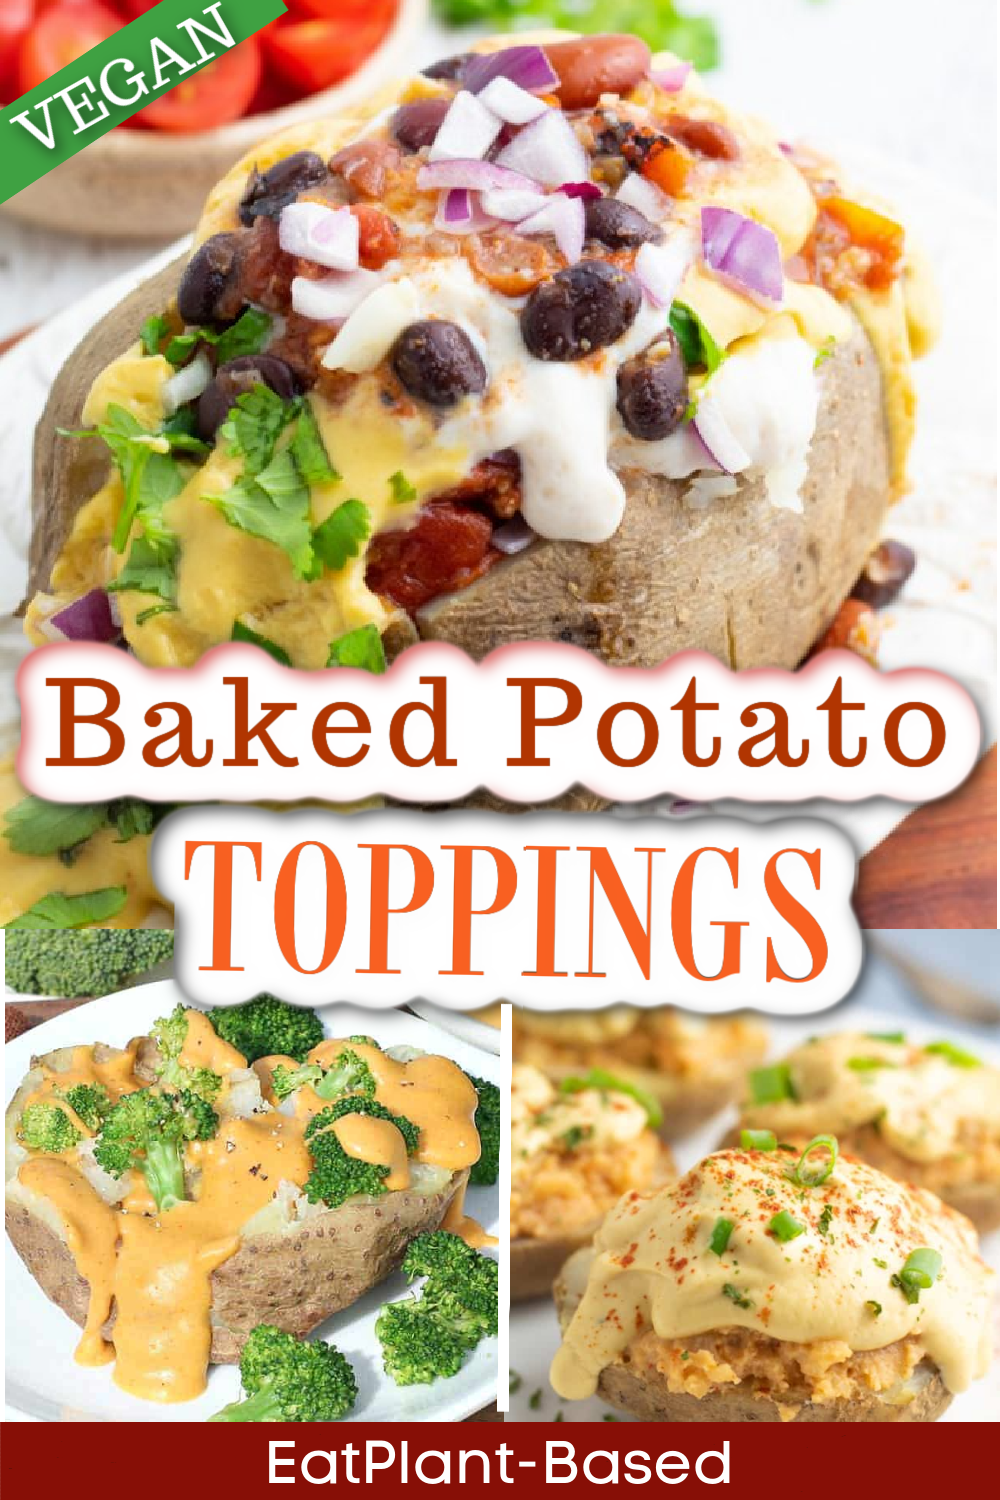 https://eatplant-based.com/wp-content/uploads/2015/02/Baked-Potato-VEGAN-Toppings.png